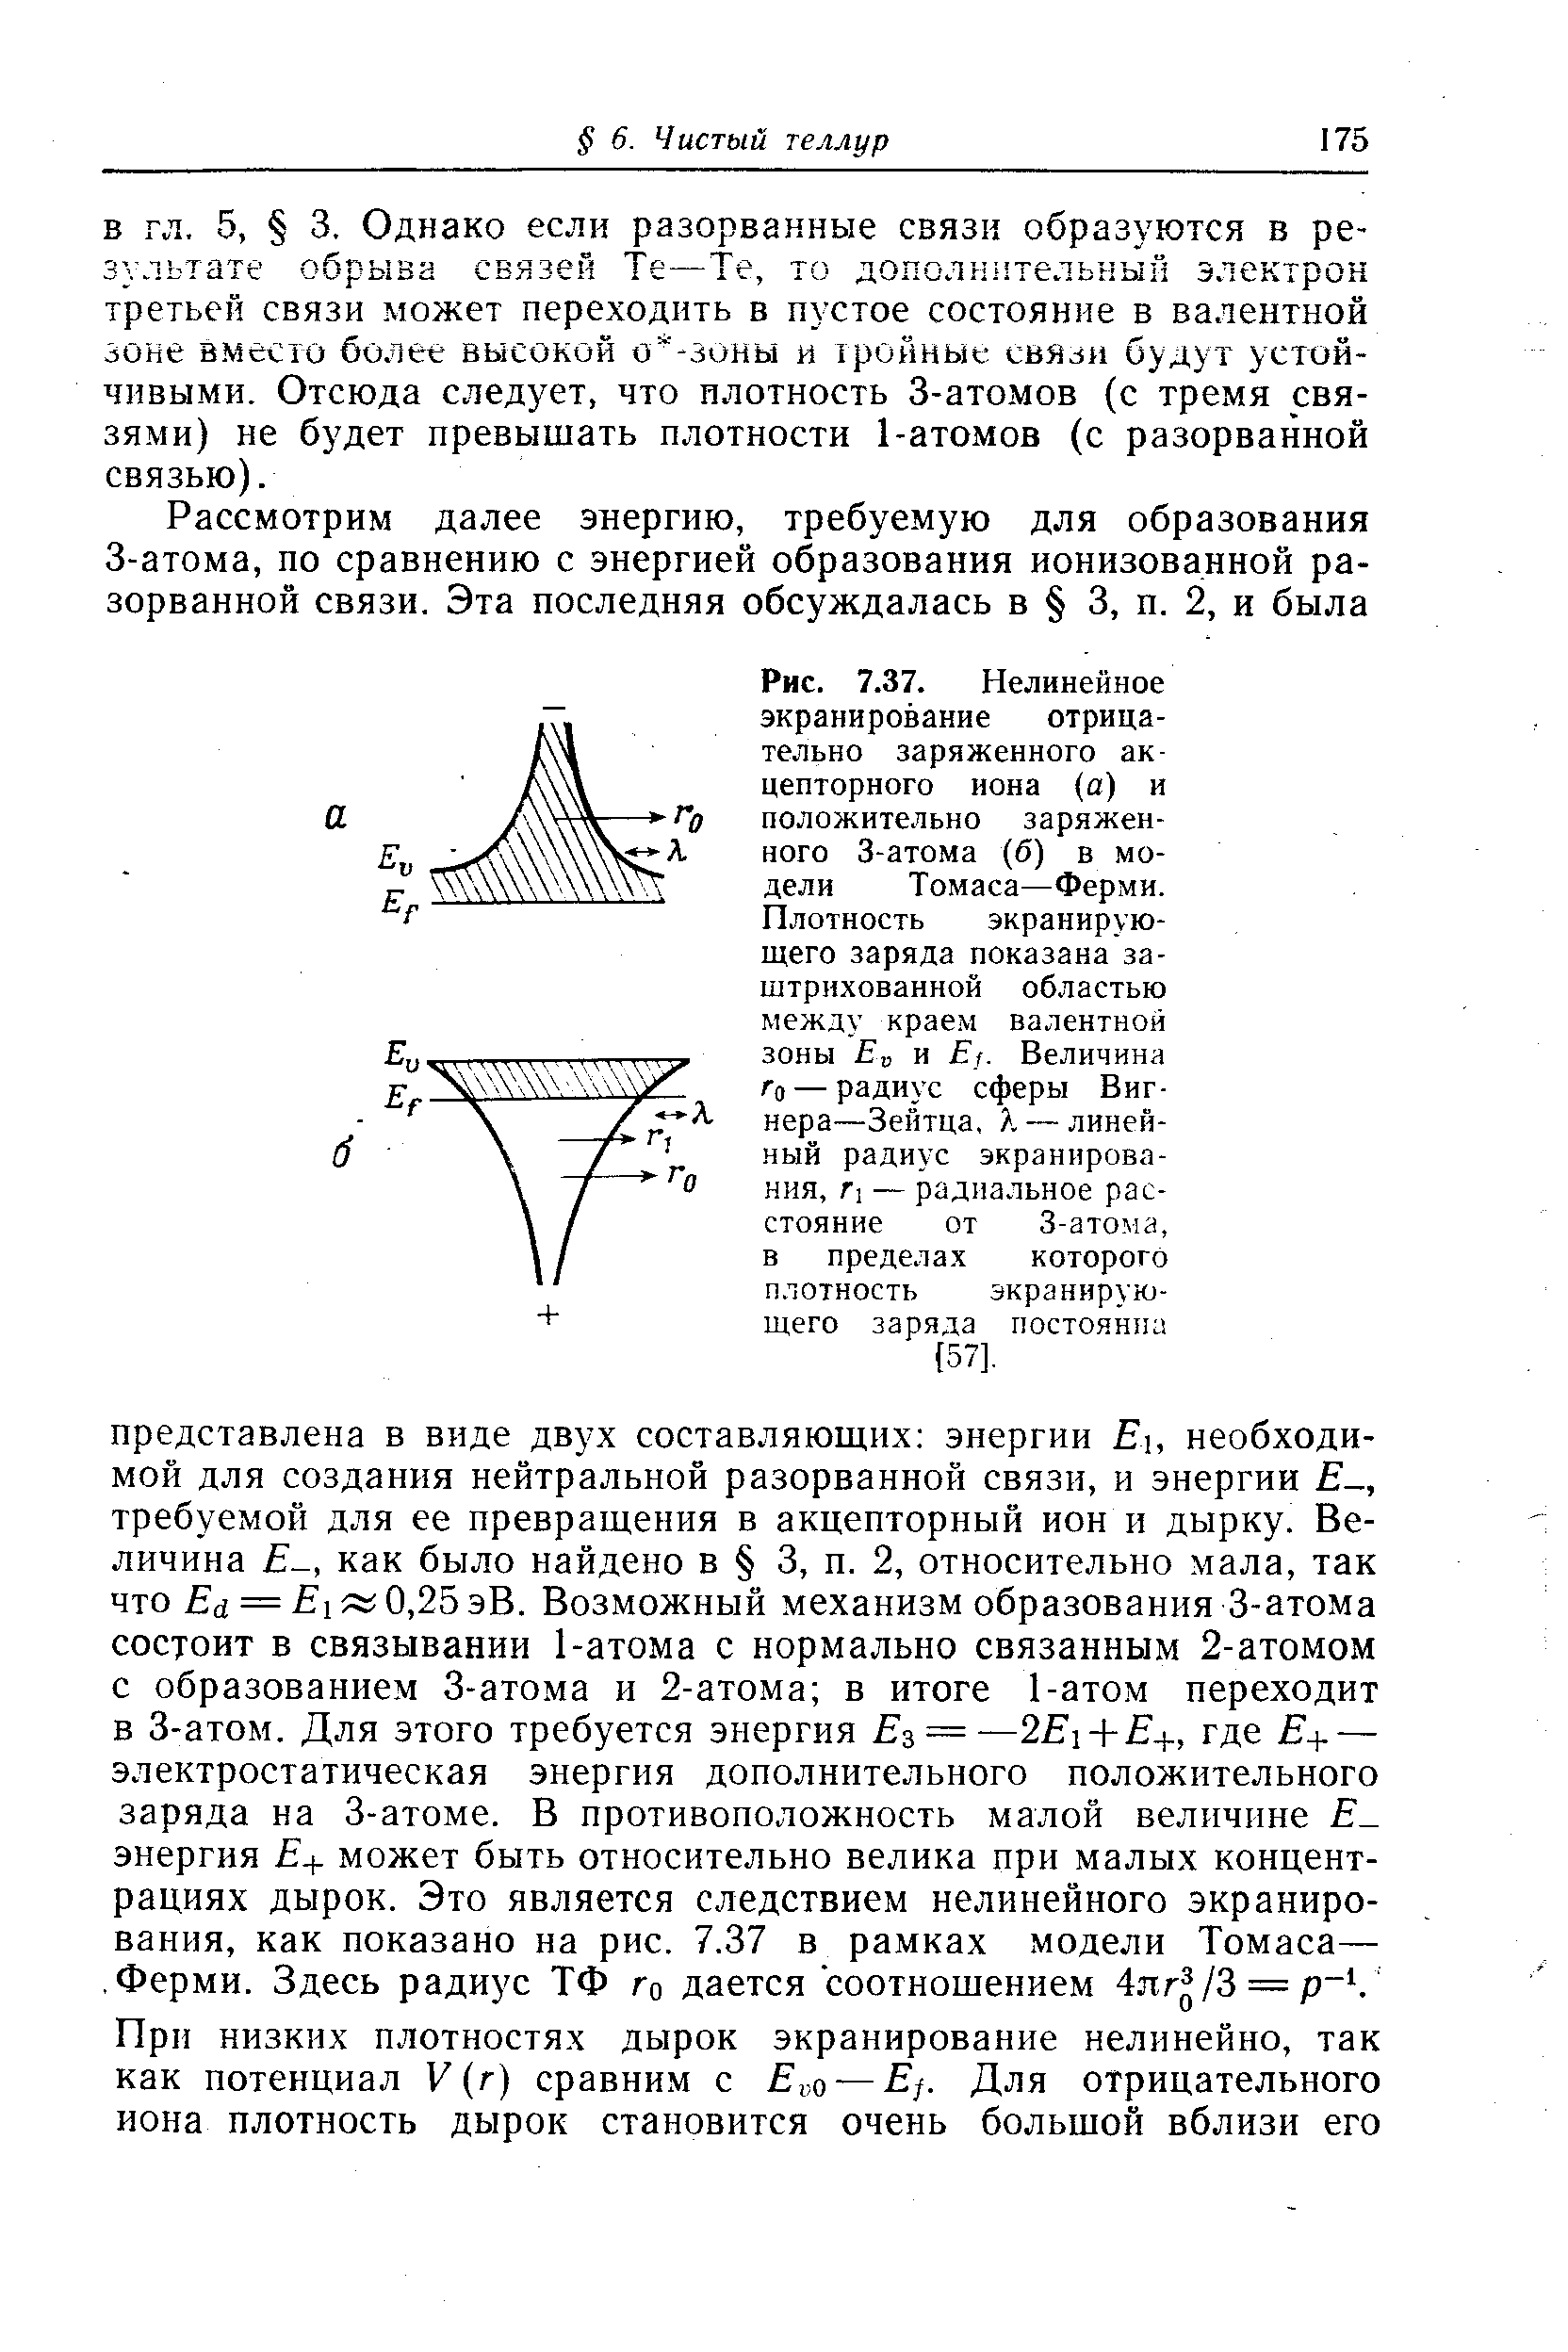 Рис. 7.37. Нелинейное экранирование отрицательно заряженного акцепторного иона (а) и положительно заряженного 3-атома (б) в модели Томаса—Ферми.
